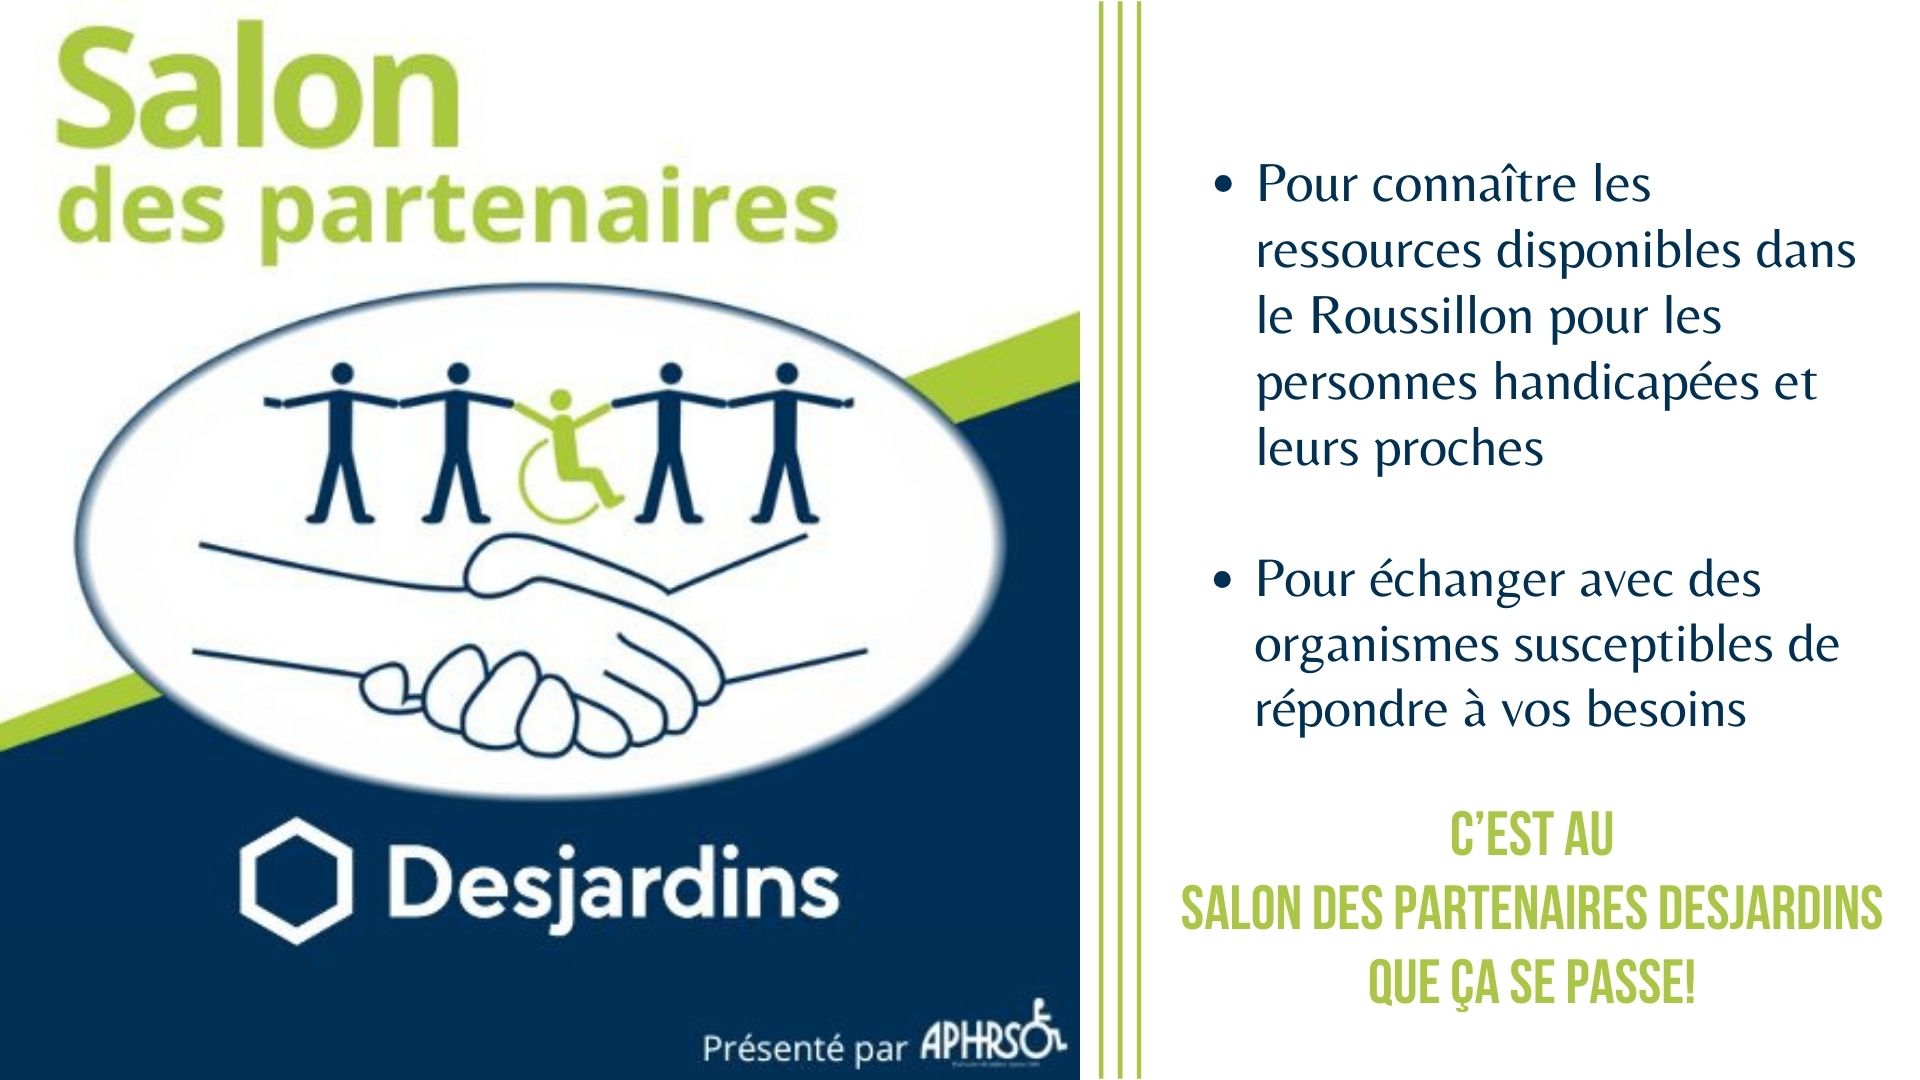 Salon des partenaires Desjardins: pour connaître les ressources disponibles dans le Roussillon pour les personnes handicapées et leurs proches et pour échanger avec des organismes susceptibes de répondre à vos besoins... c'est au salon des partenaires que ça se passe!